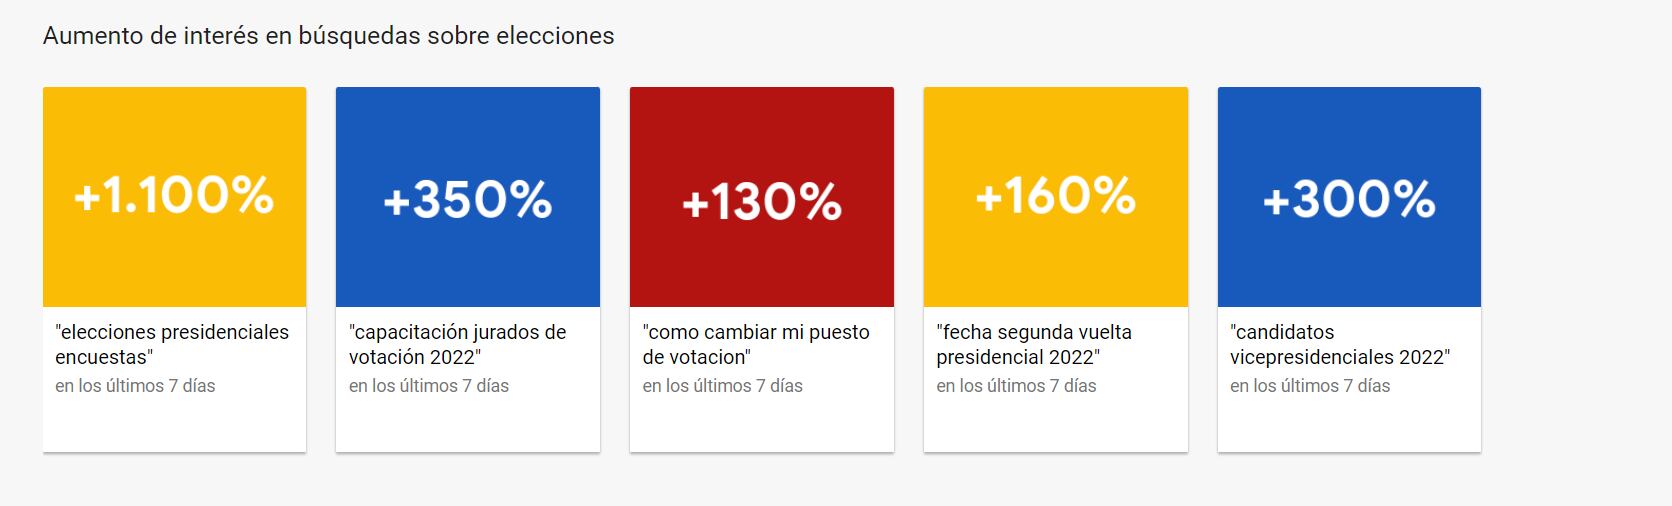 Datos sobre tendencias de búsqueda tras las elecciones en Colombia